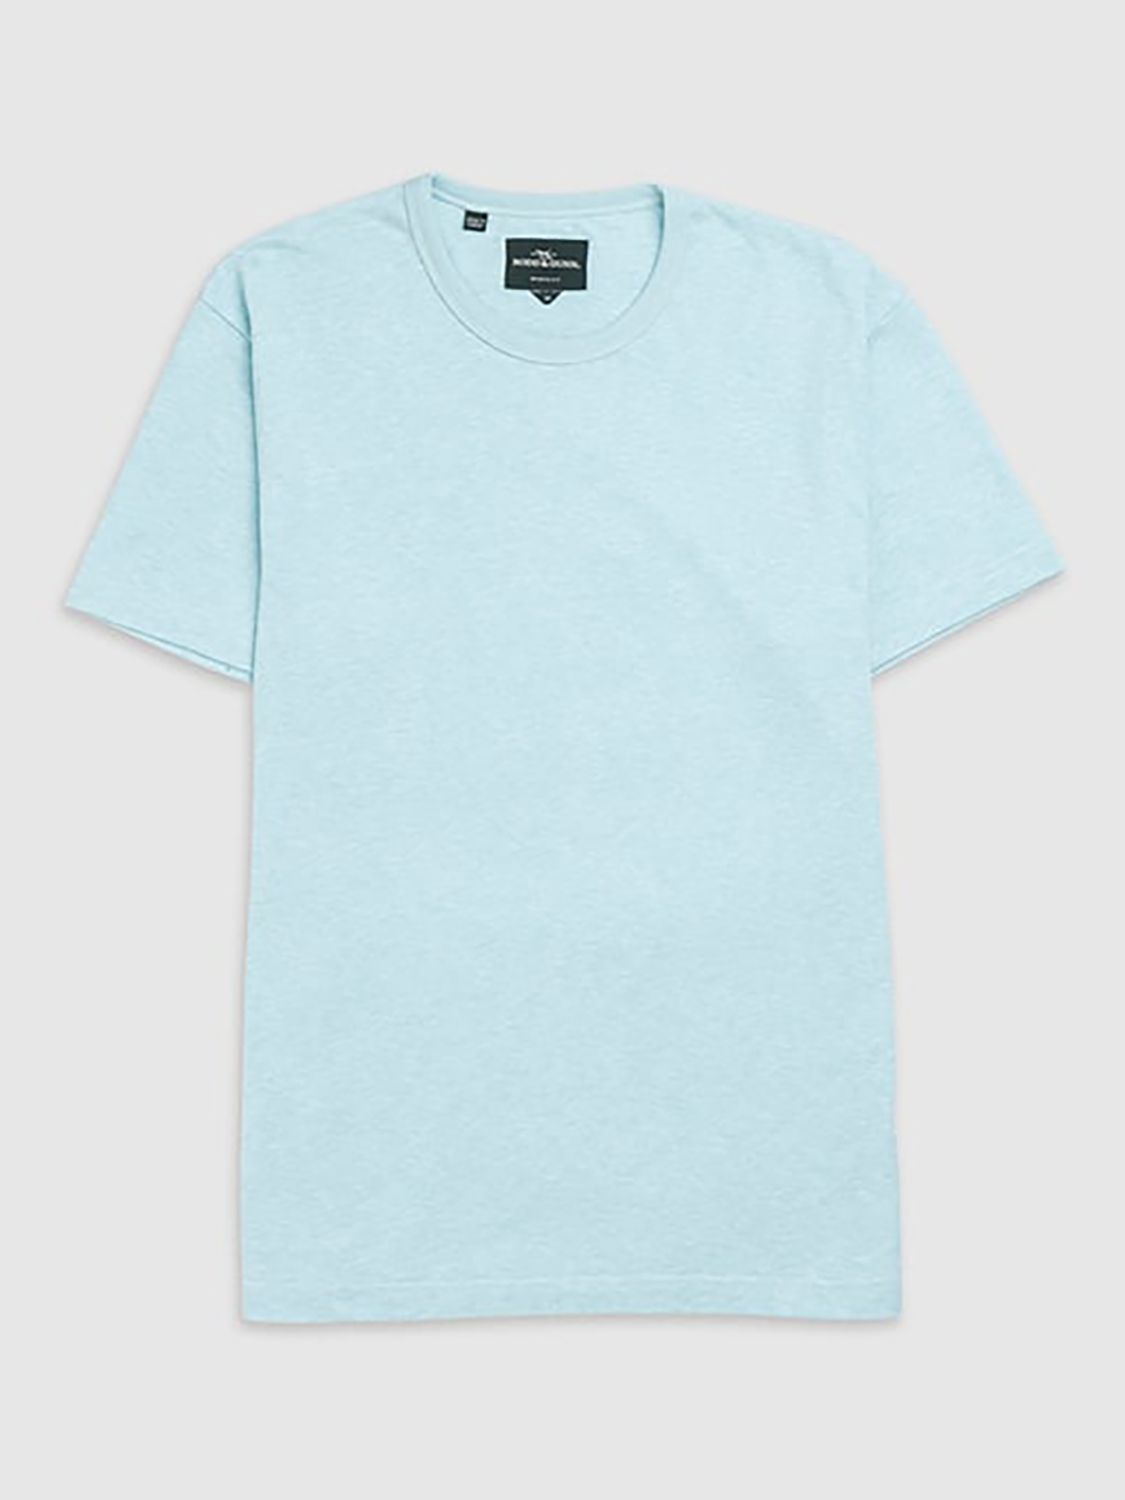 Rodd & Gunn Fairfield Cotton Linen Slim Fit T-Shirt, Mint, XS